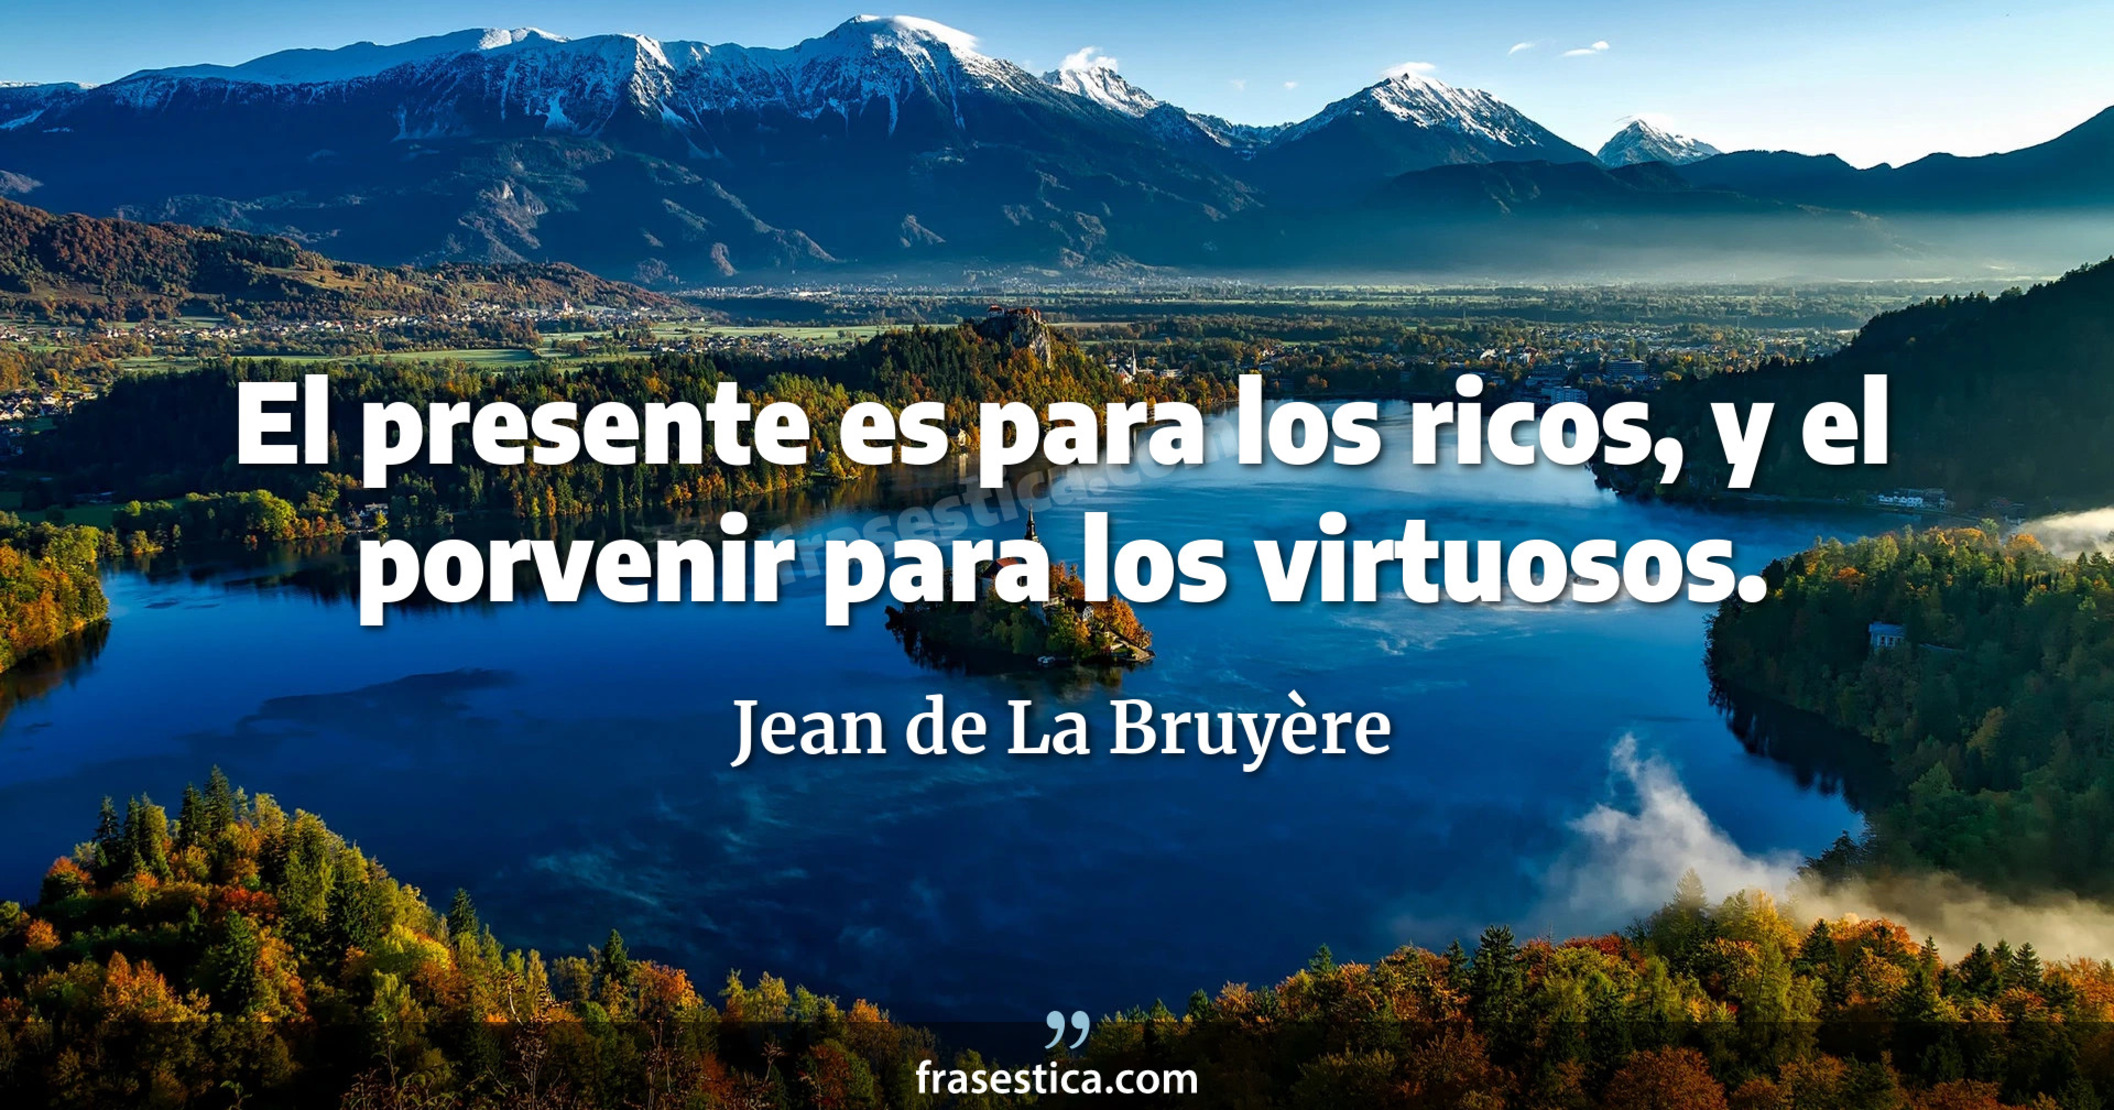 El presente es para los ricos, y el porvenir para los virtuosos. - Jean de La Bruyère